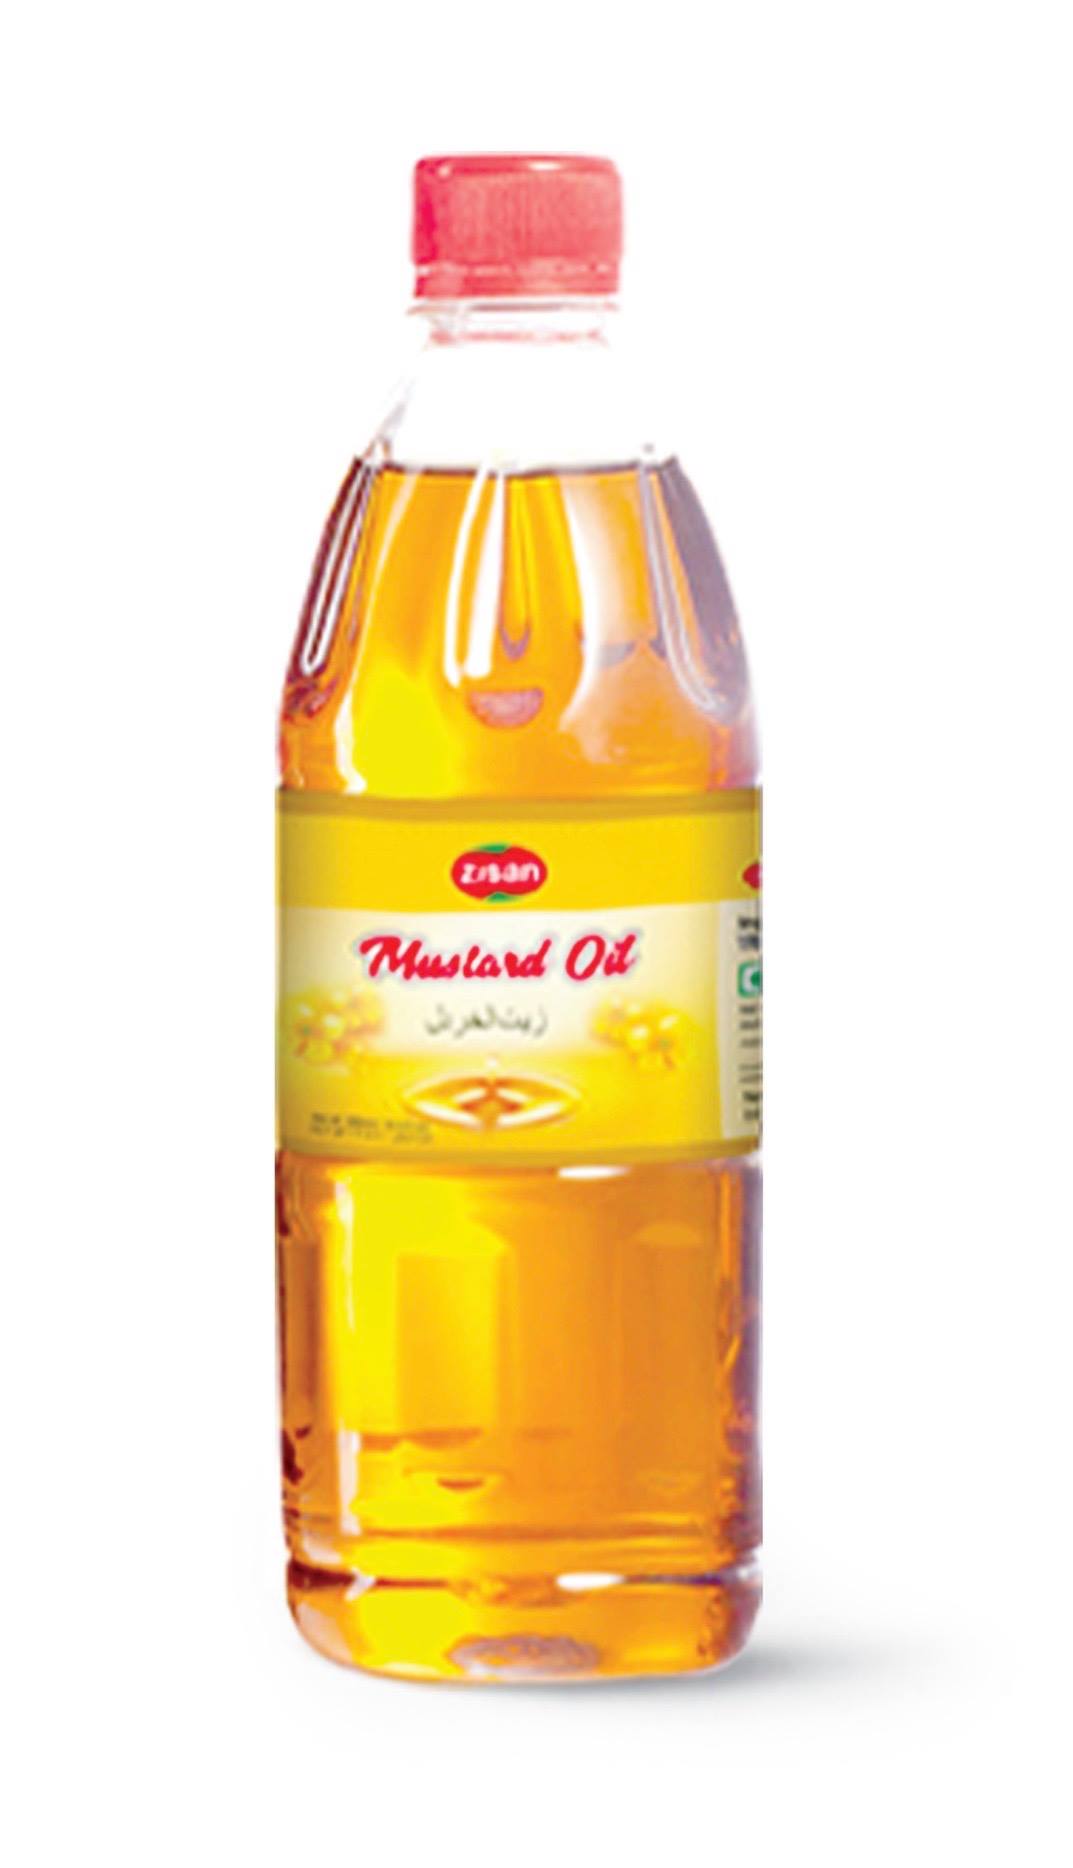 Zisan Mustard Oil